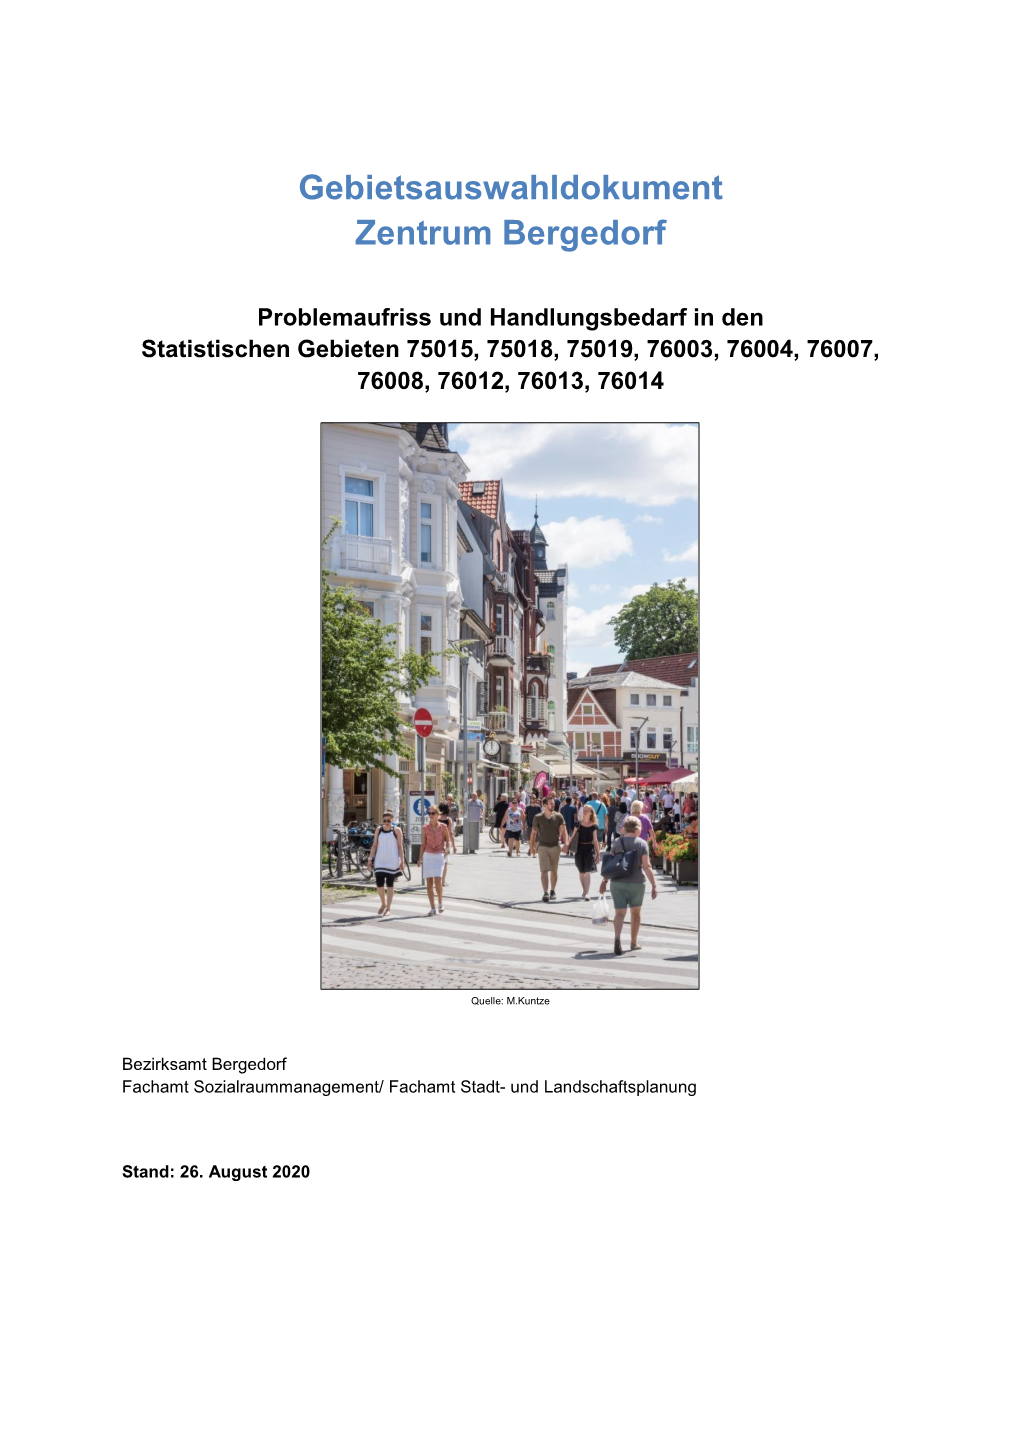 Gebietsauswahldokument Zentrum Bergedorf